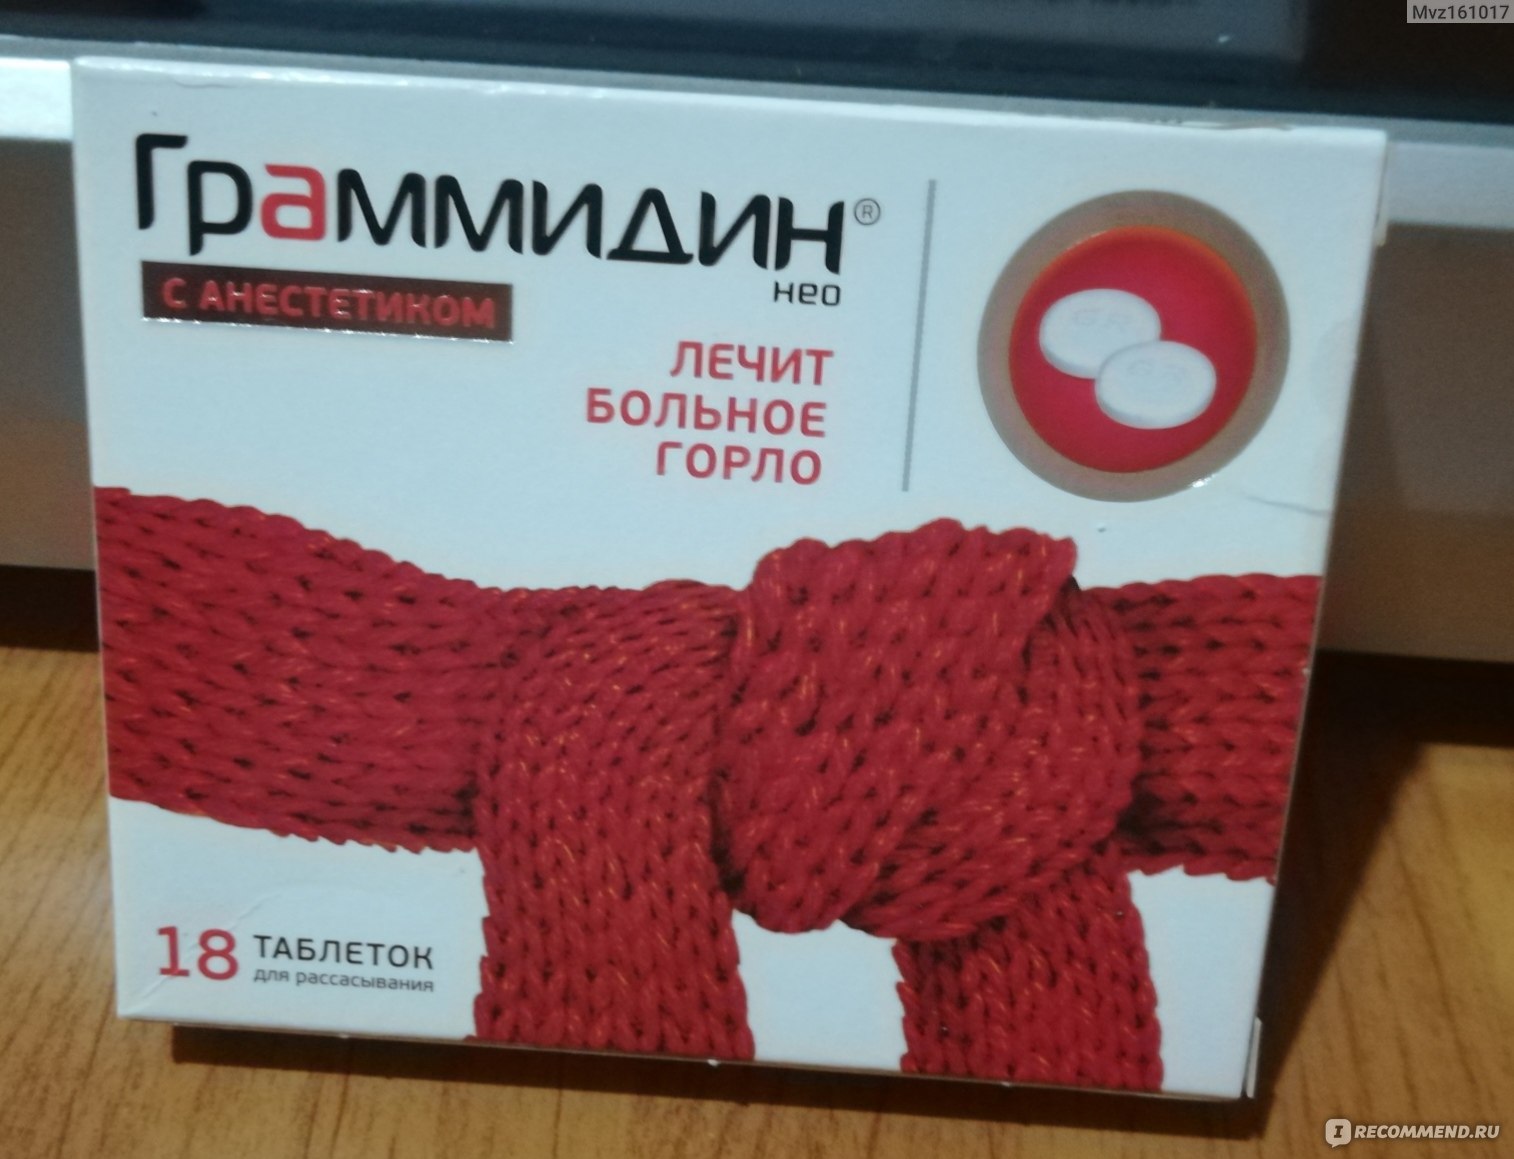 Таблетки от горла с красным шарфом на коробке